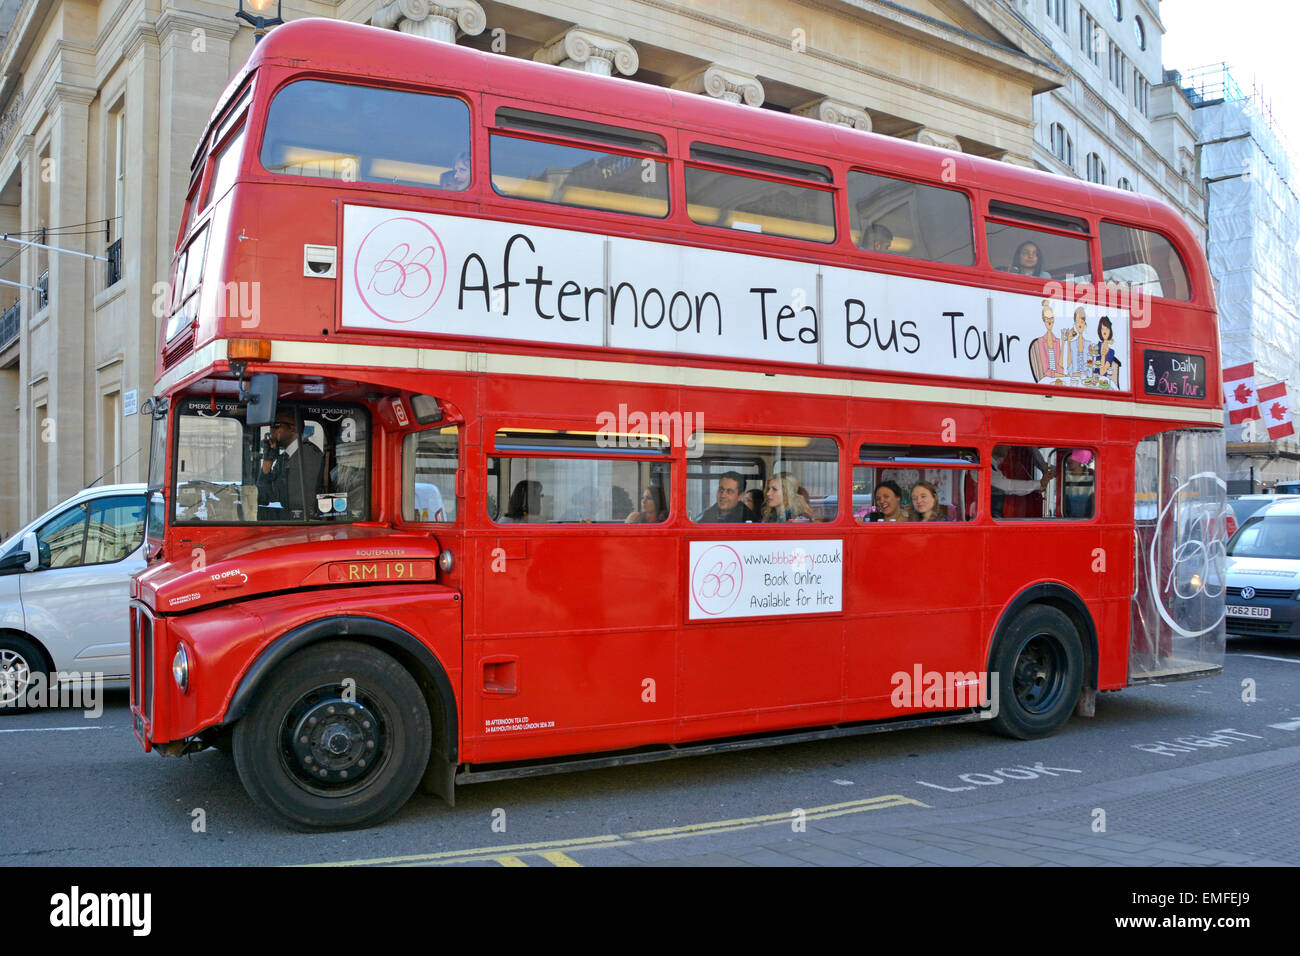 Klassischer originaler, roter historischer routemaster Doppeldeckerbus, der für den Nachmittagstee und die Besichtigungstour am Trafalgar Square London England GB geeignet ist Stockfoto